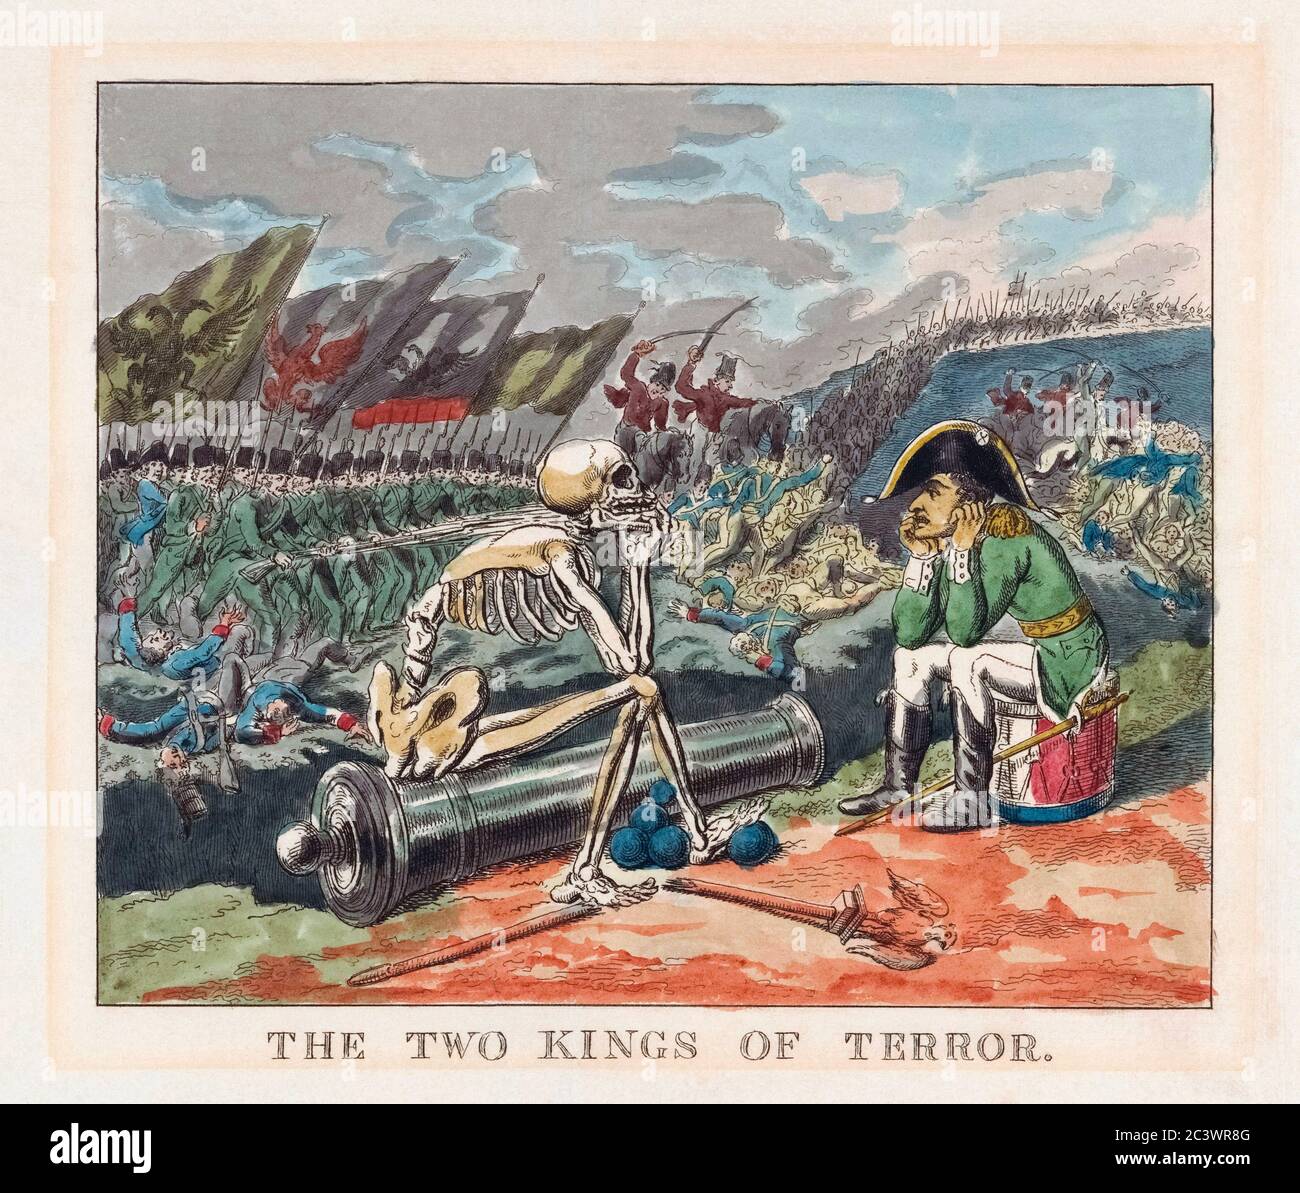 Les deux rois de la terreur. La mort et Napoléon s'assoient les uns contre les autres dans les débris d'un champ de bataille. Caricature politique de 1814. Après une œuvre de Thomas Rowlandson. Banque D'Images